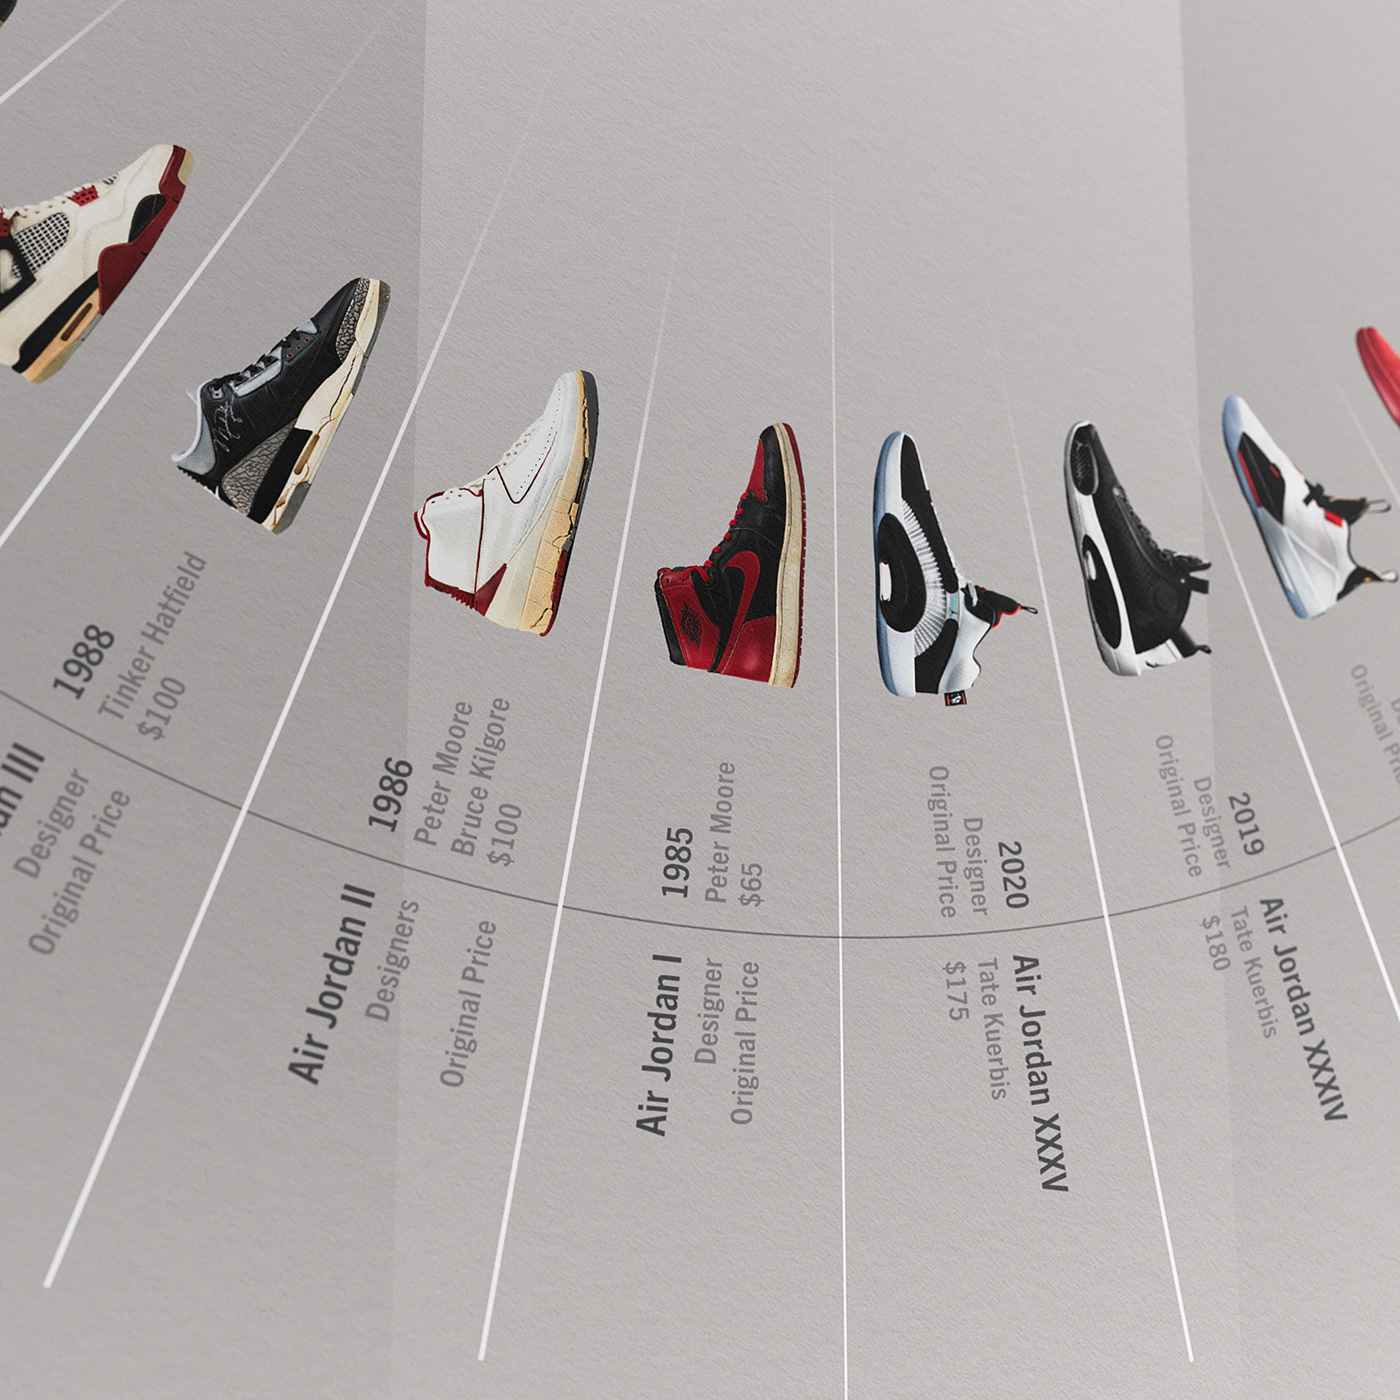 airjordan jordan sneakers Nike shoes digitalart Poster Design infographic data visualization AirJordans